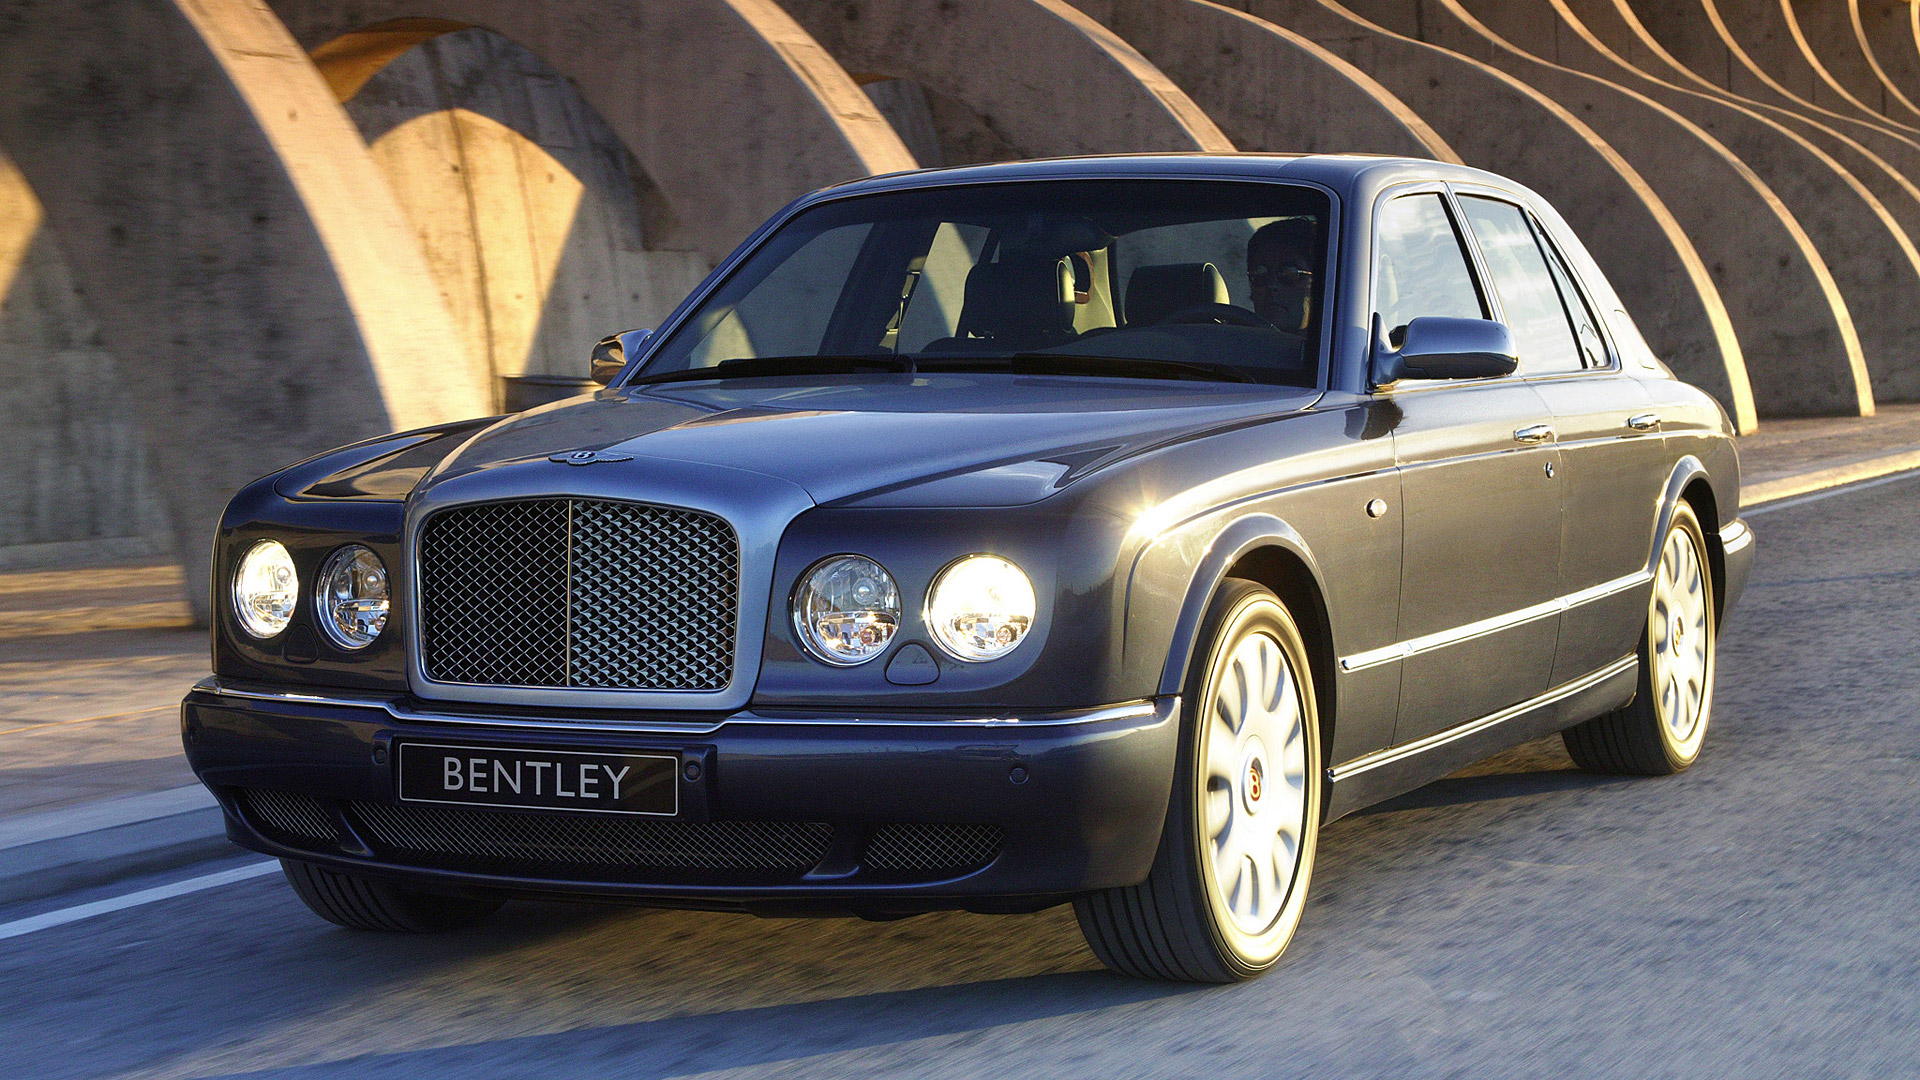  2005 Bentley Arnage R Wallpaper.